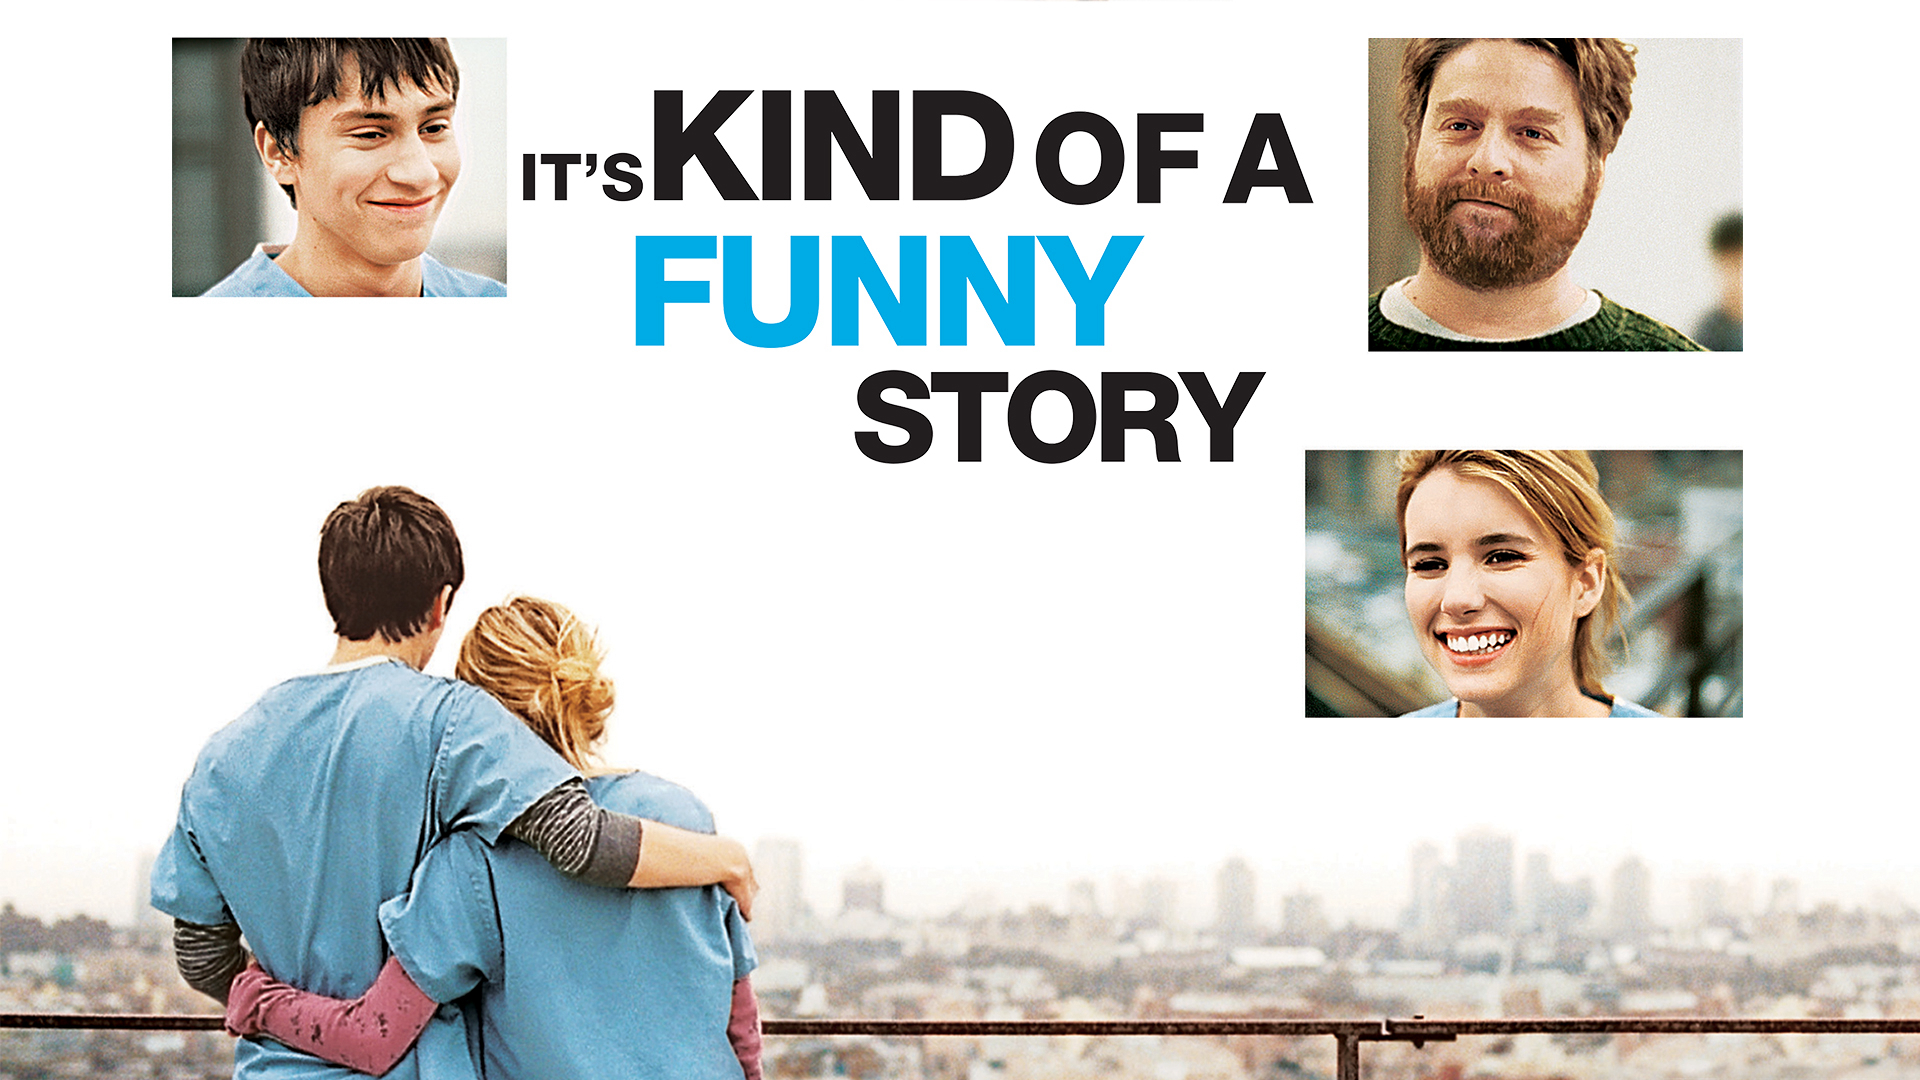 Kind of a Funny Story / Kind of a Funny Story (2010)